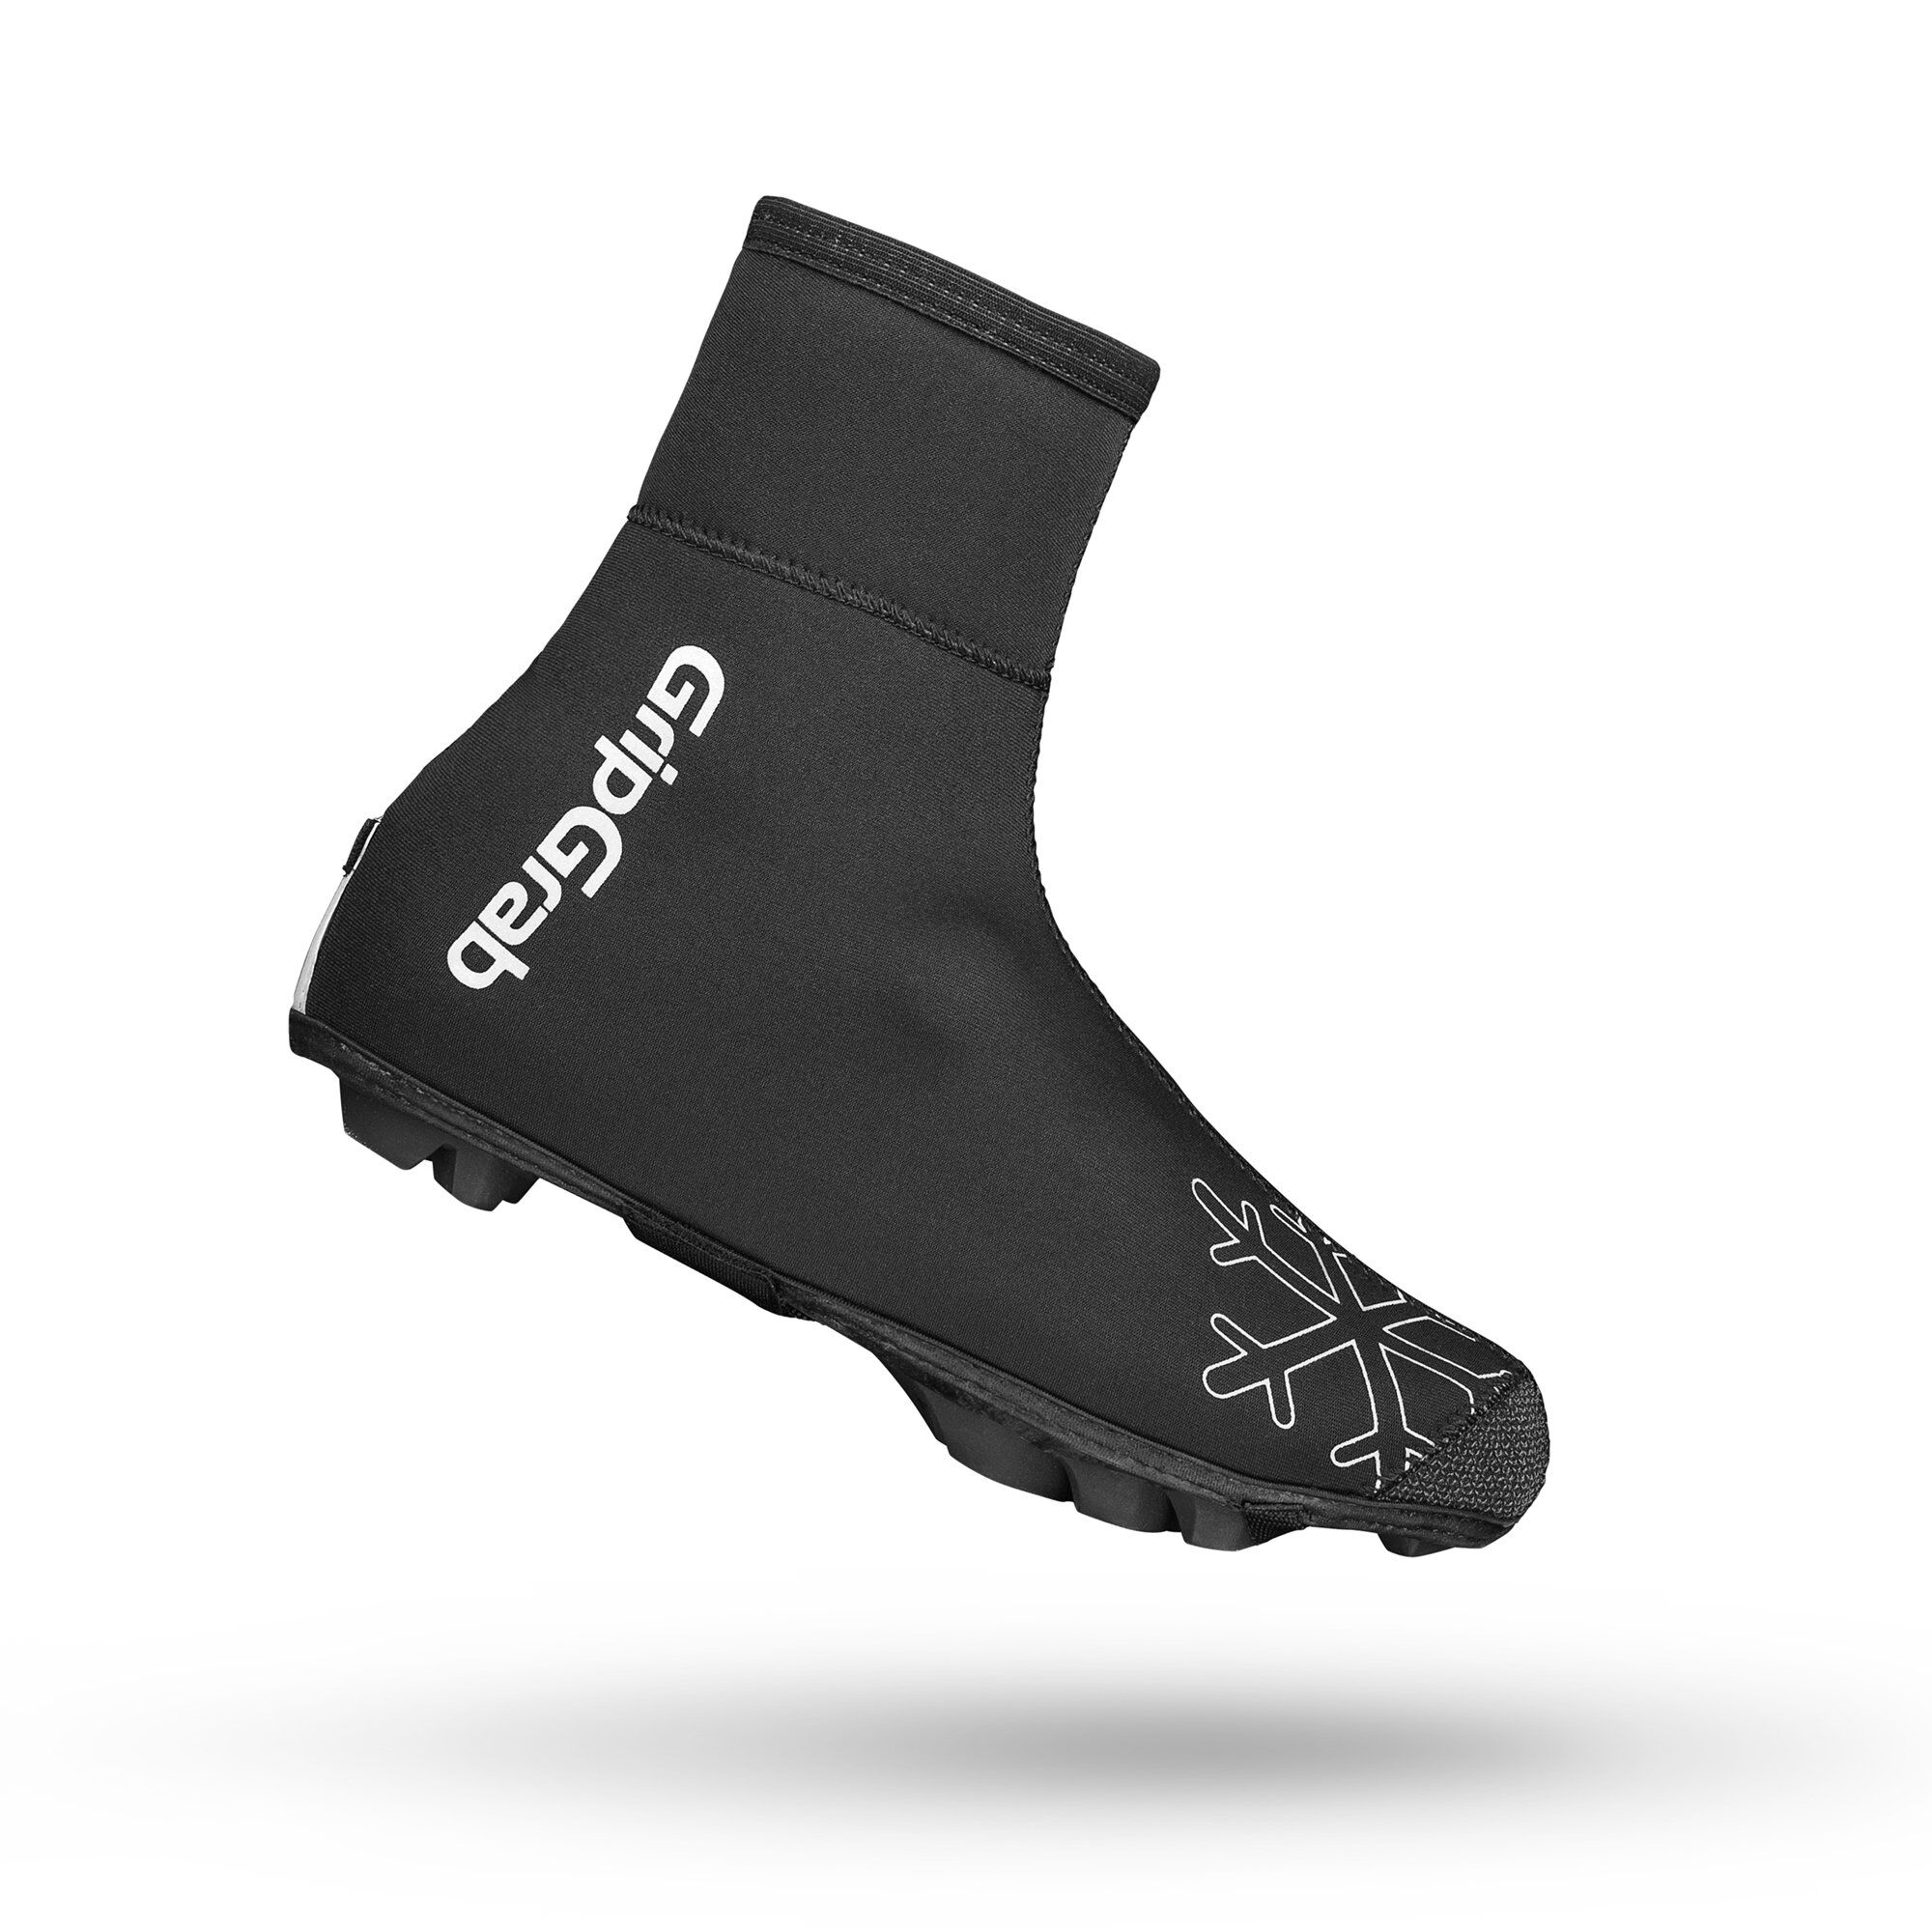 Grip Grab Arctic X Waterproof Deep Winter MTB/CX Shoe Cover - Cubrezapatillas ciclismo